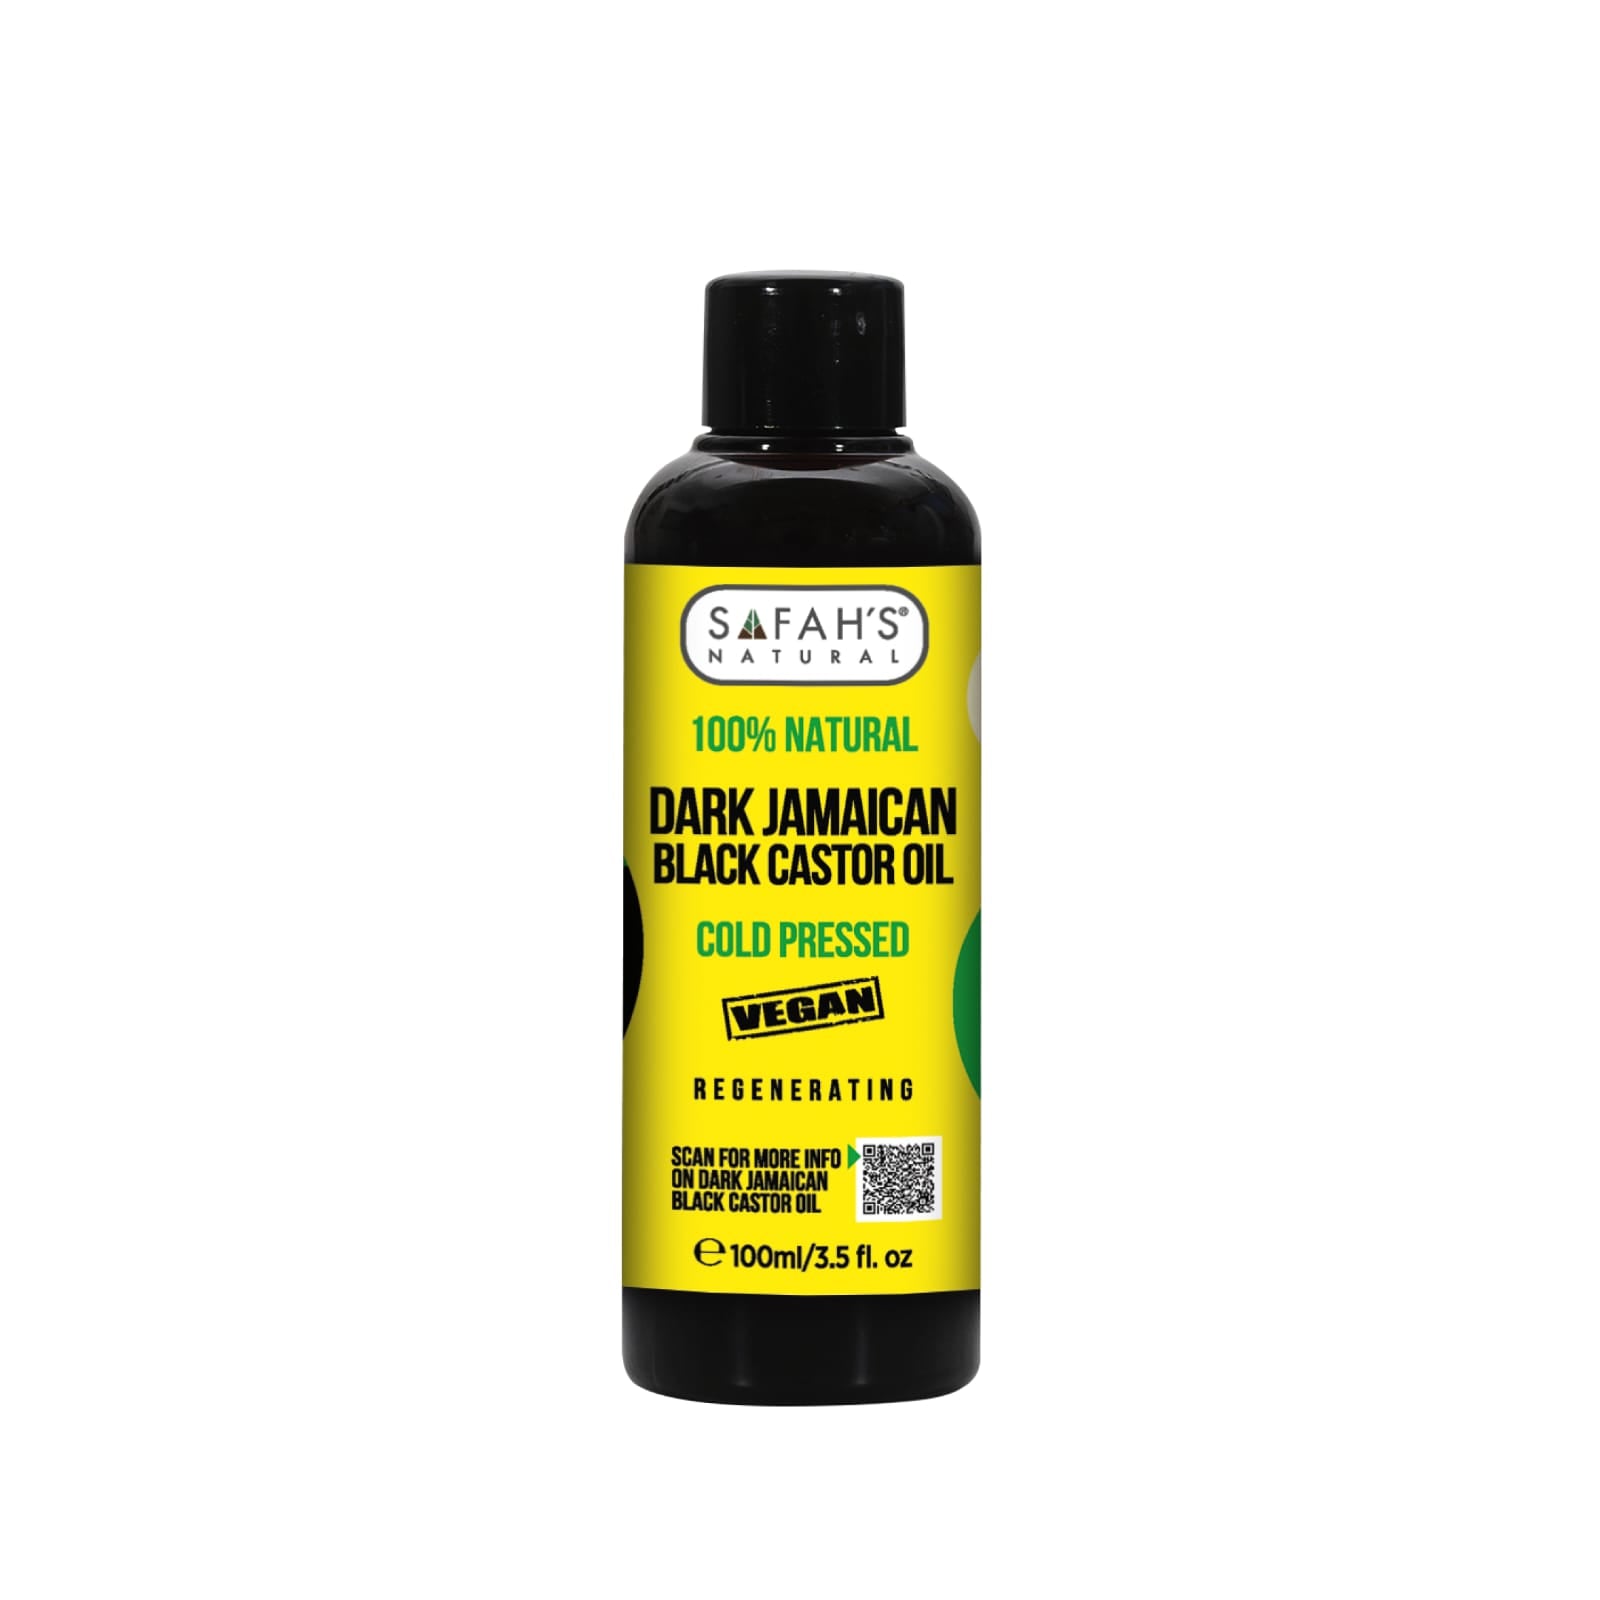 Dark Jamaican Black Castor oil